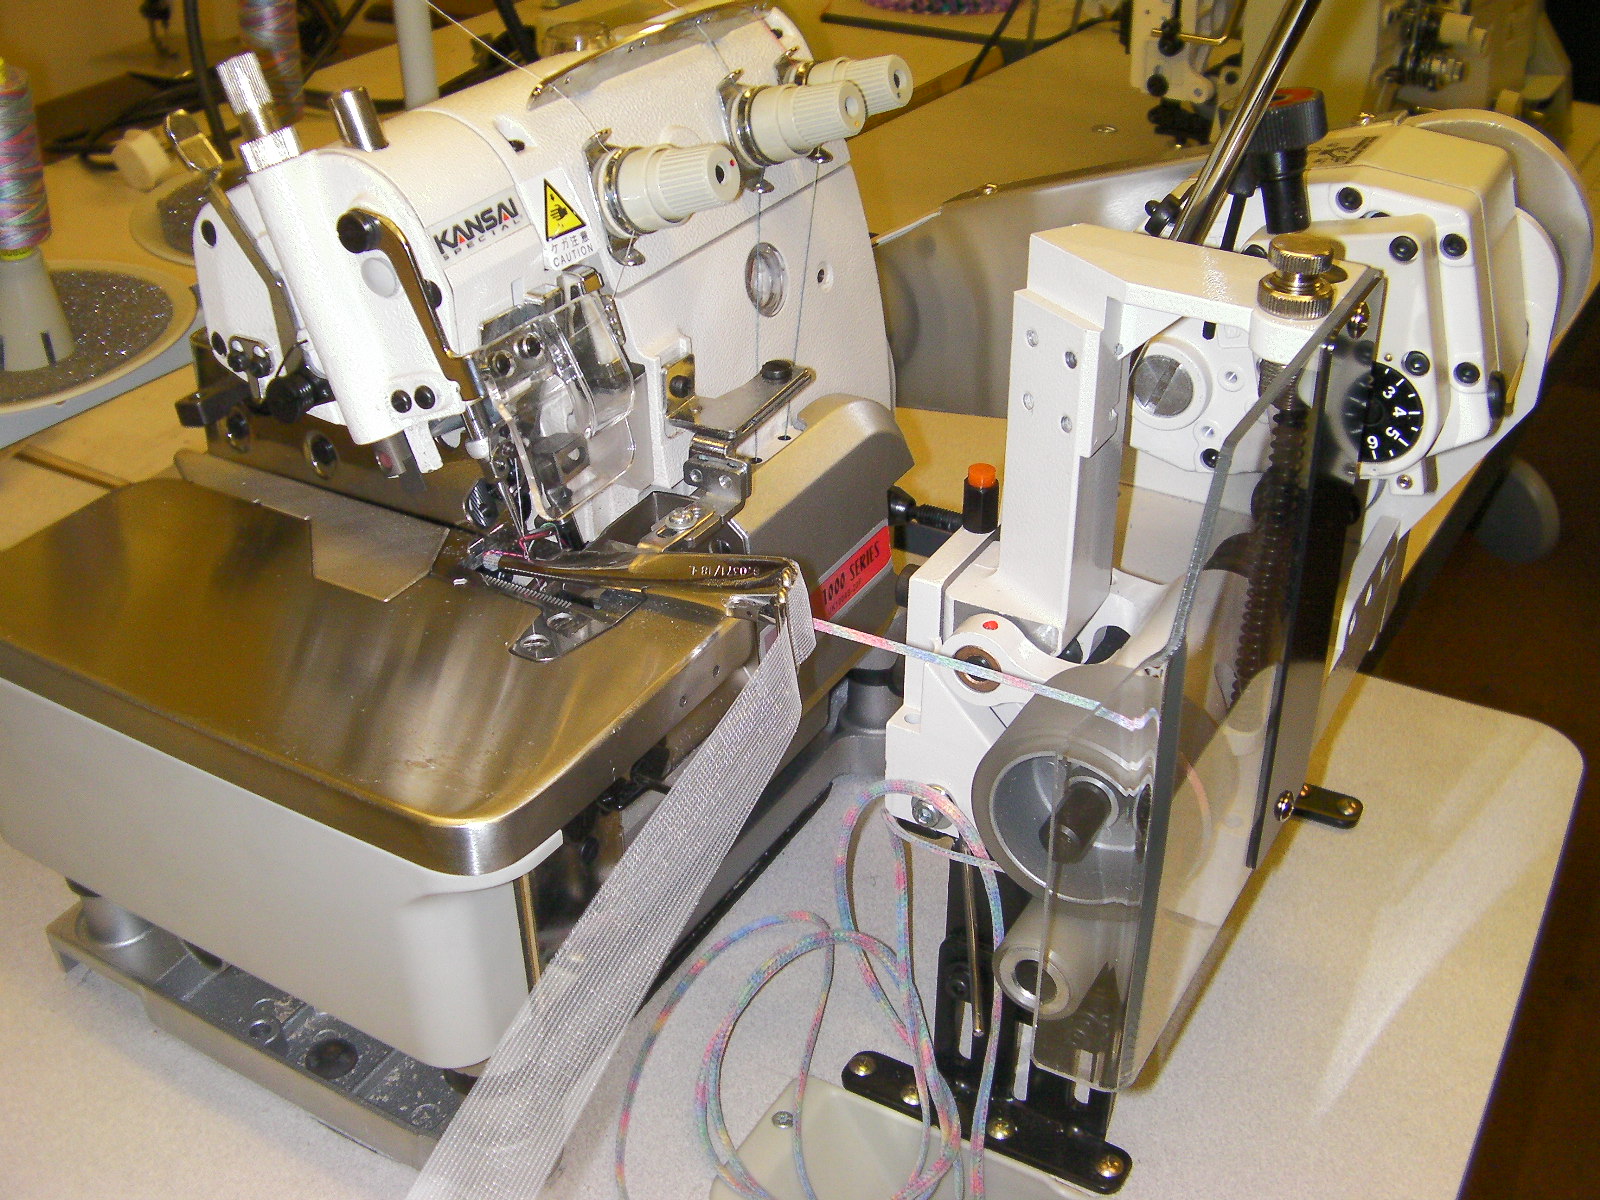 Kansai Special UK-1004-SP macchina da cucire rouleaux